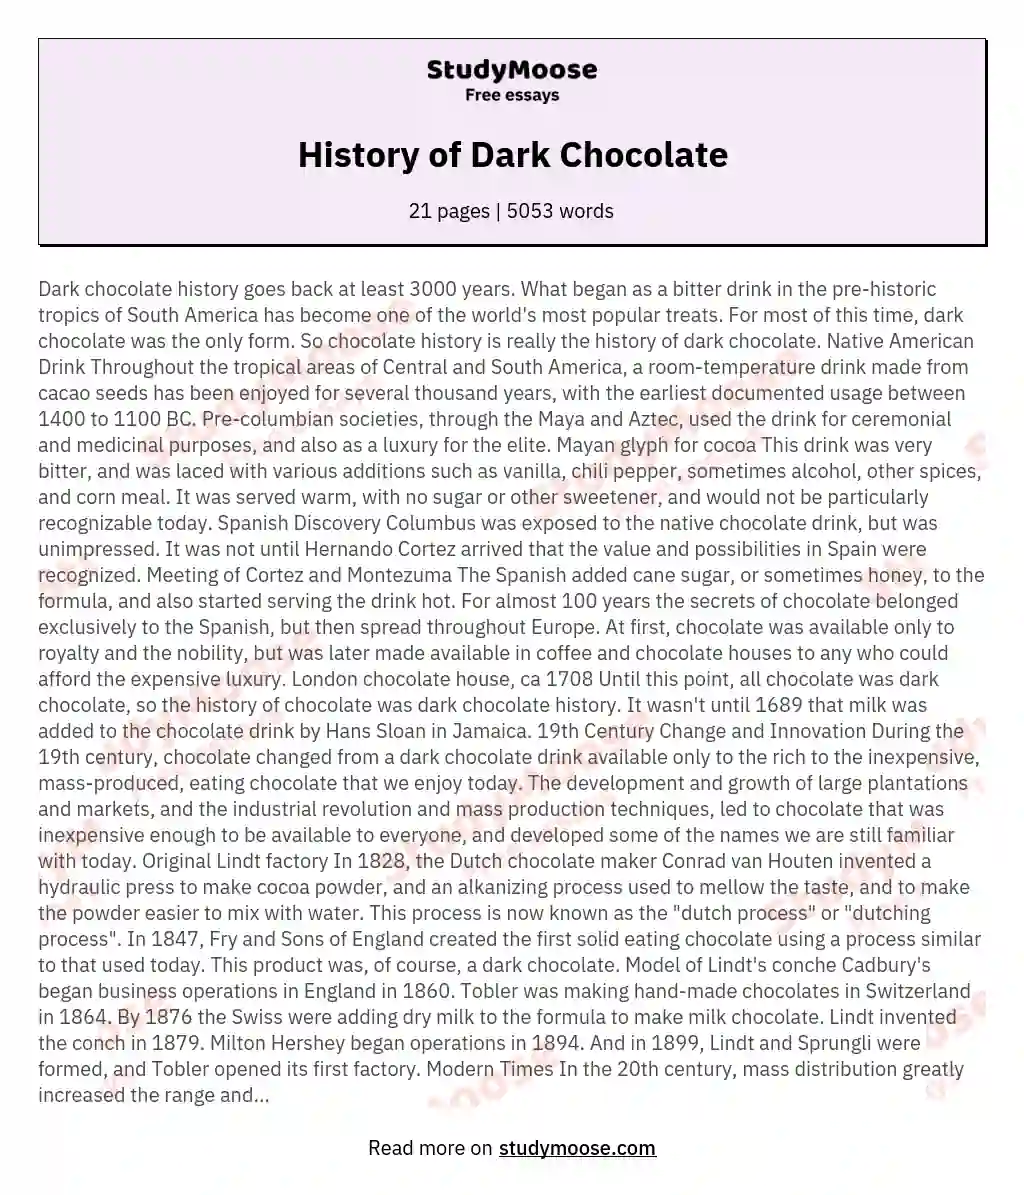 History of Dark Chocolate